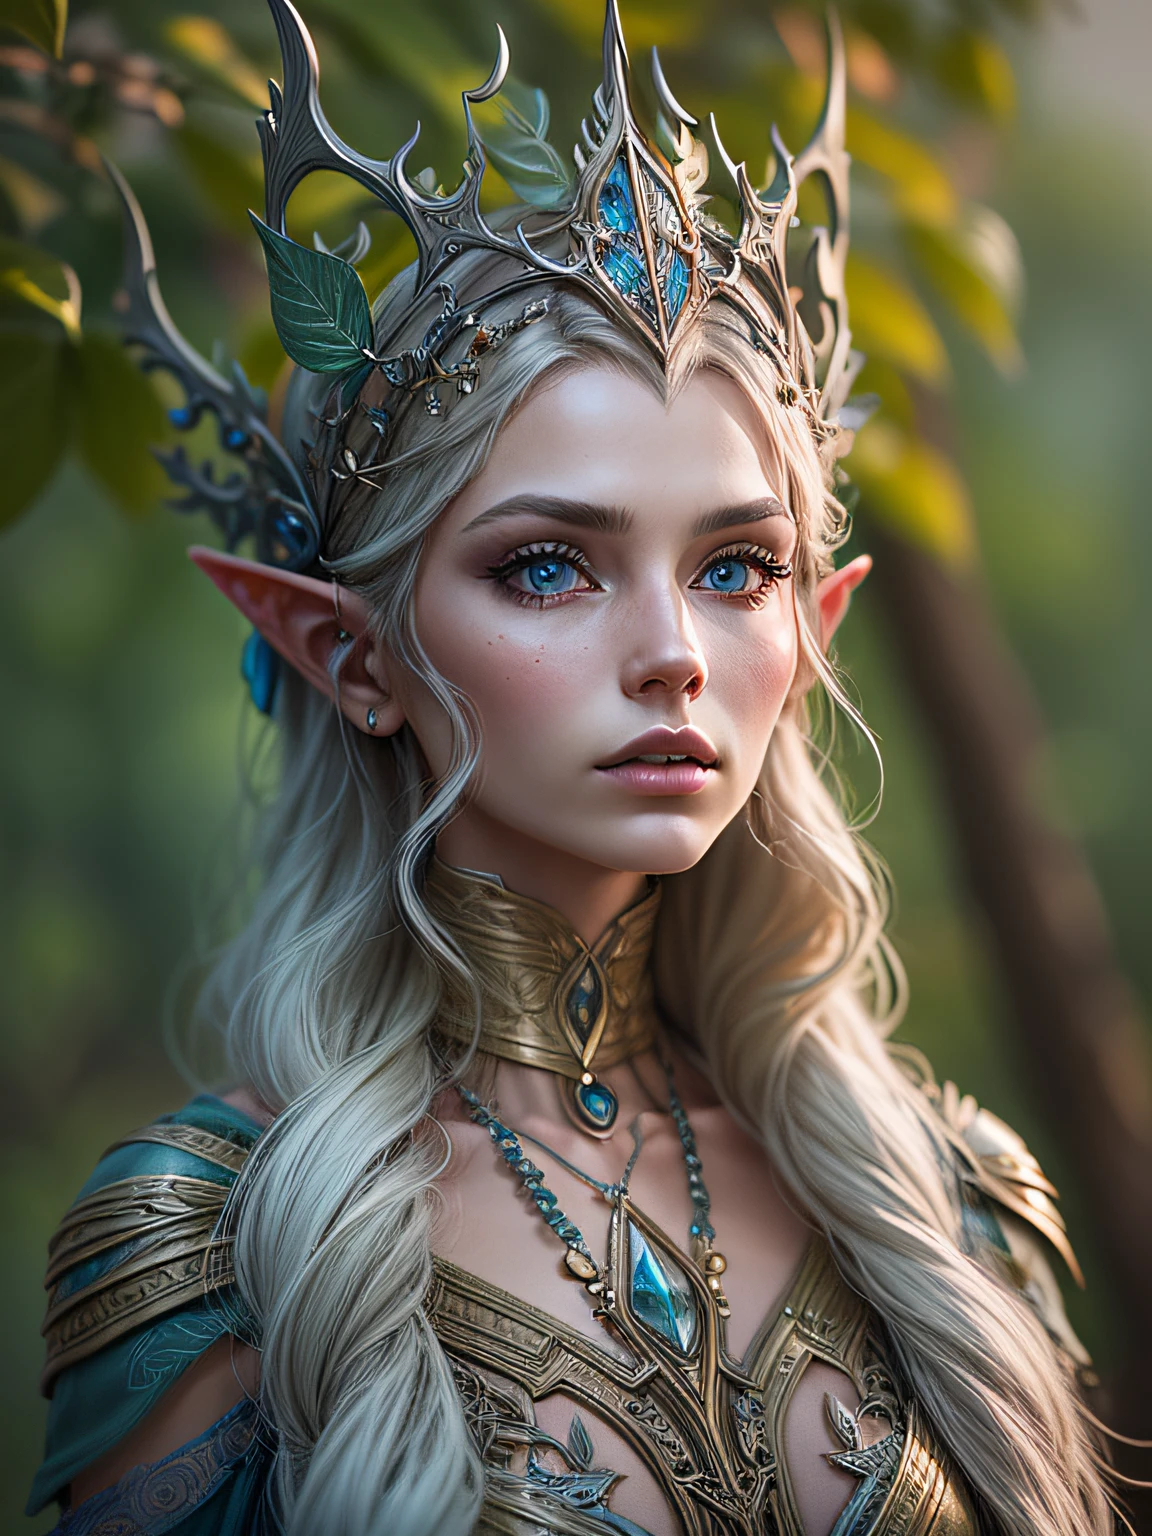 8k, Ultra detallado, fotografía de una hermosa mujer elfa, estilo elfo de alta costura